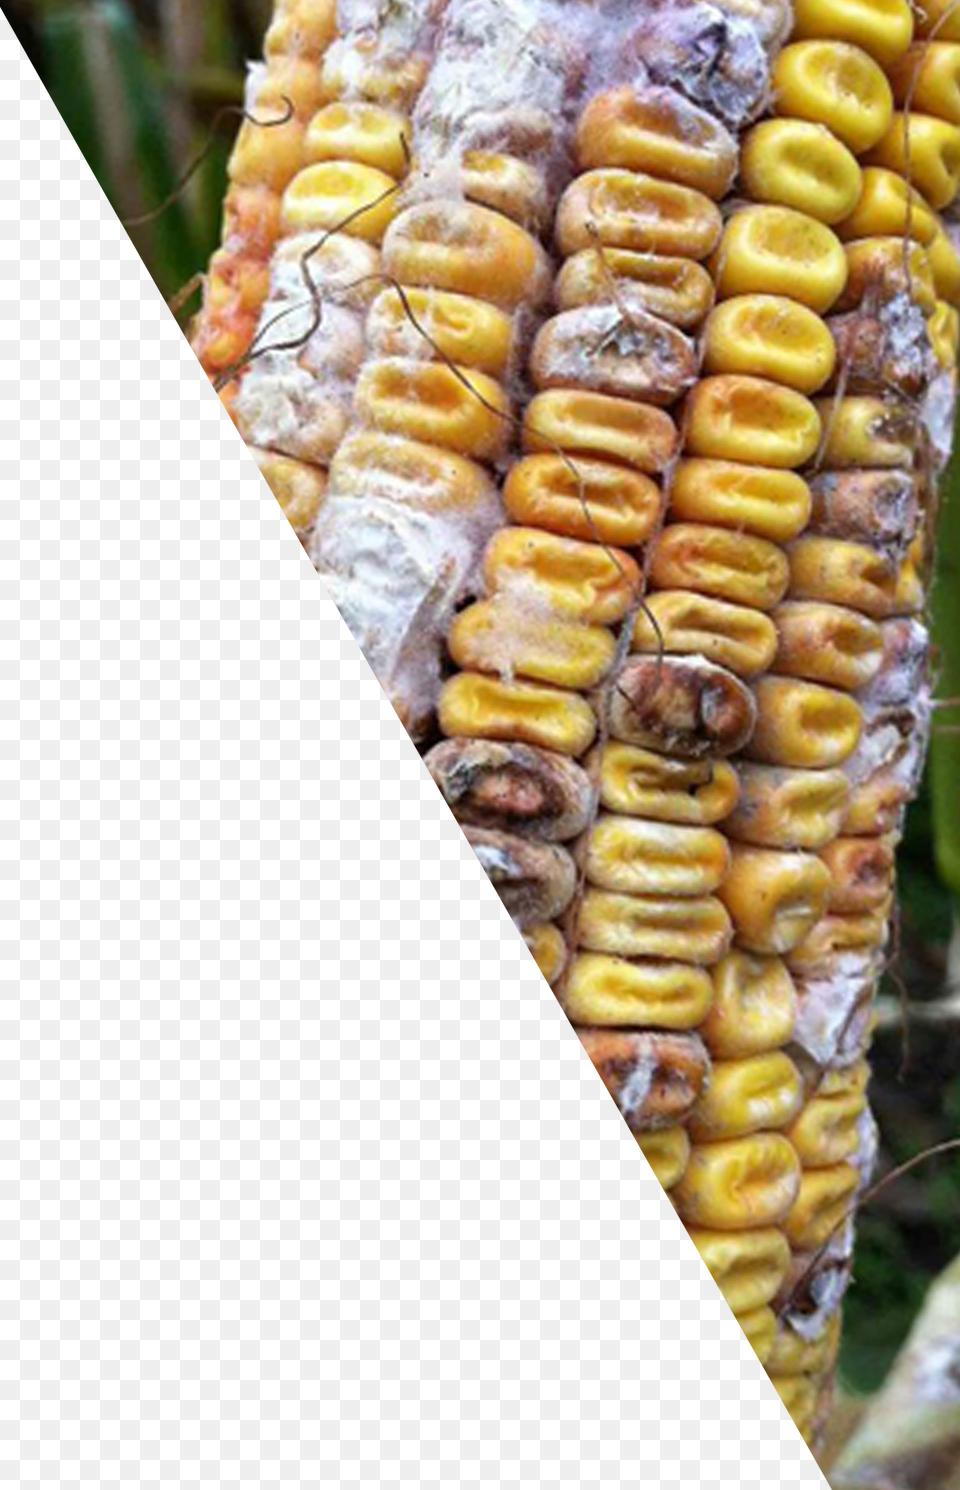 Corn Cob Corn Kernels Download Corn Kernels, Food, Grain, Plant, Produce Free Transparent Png